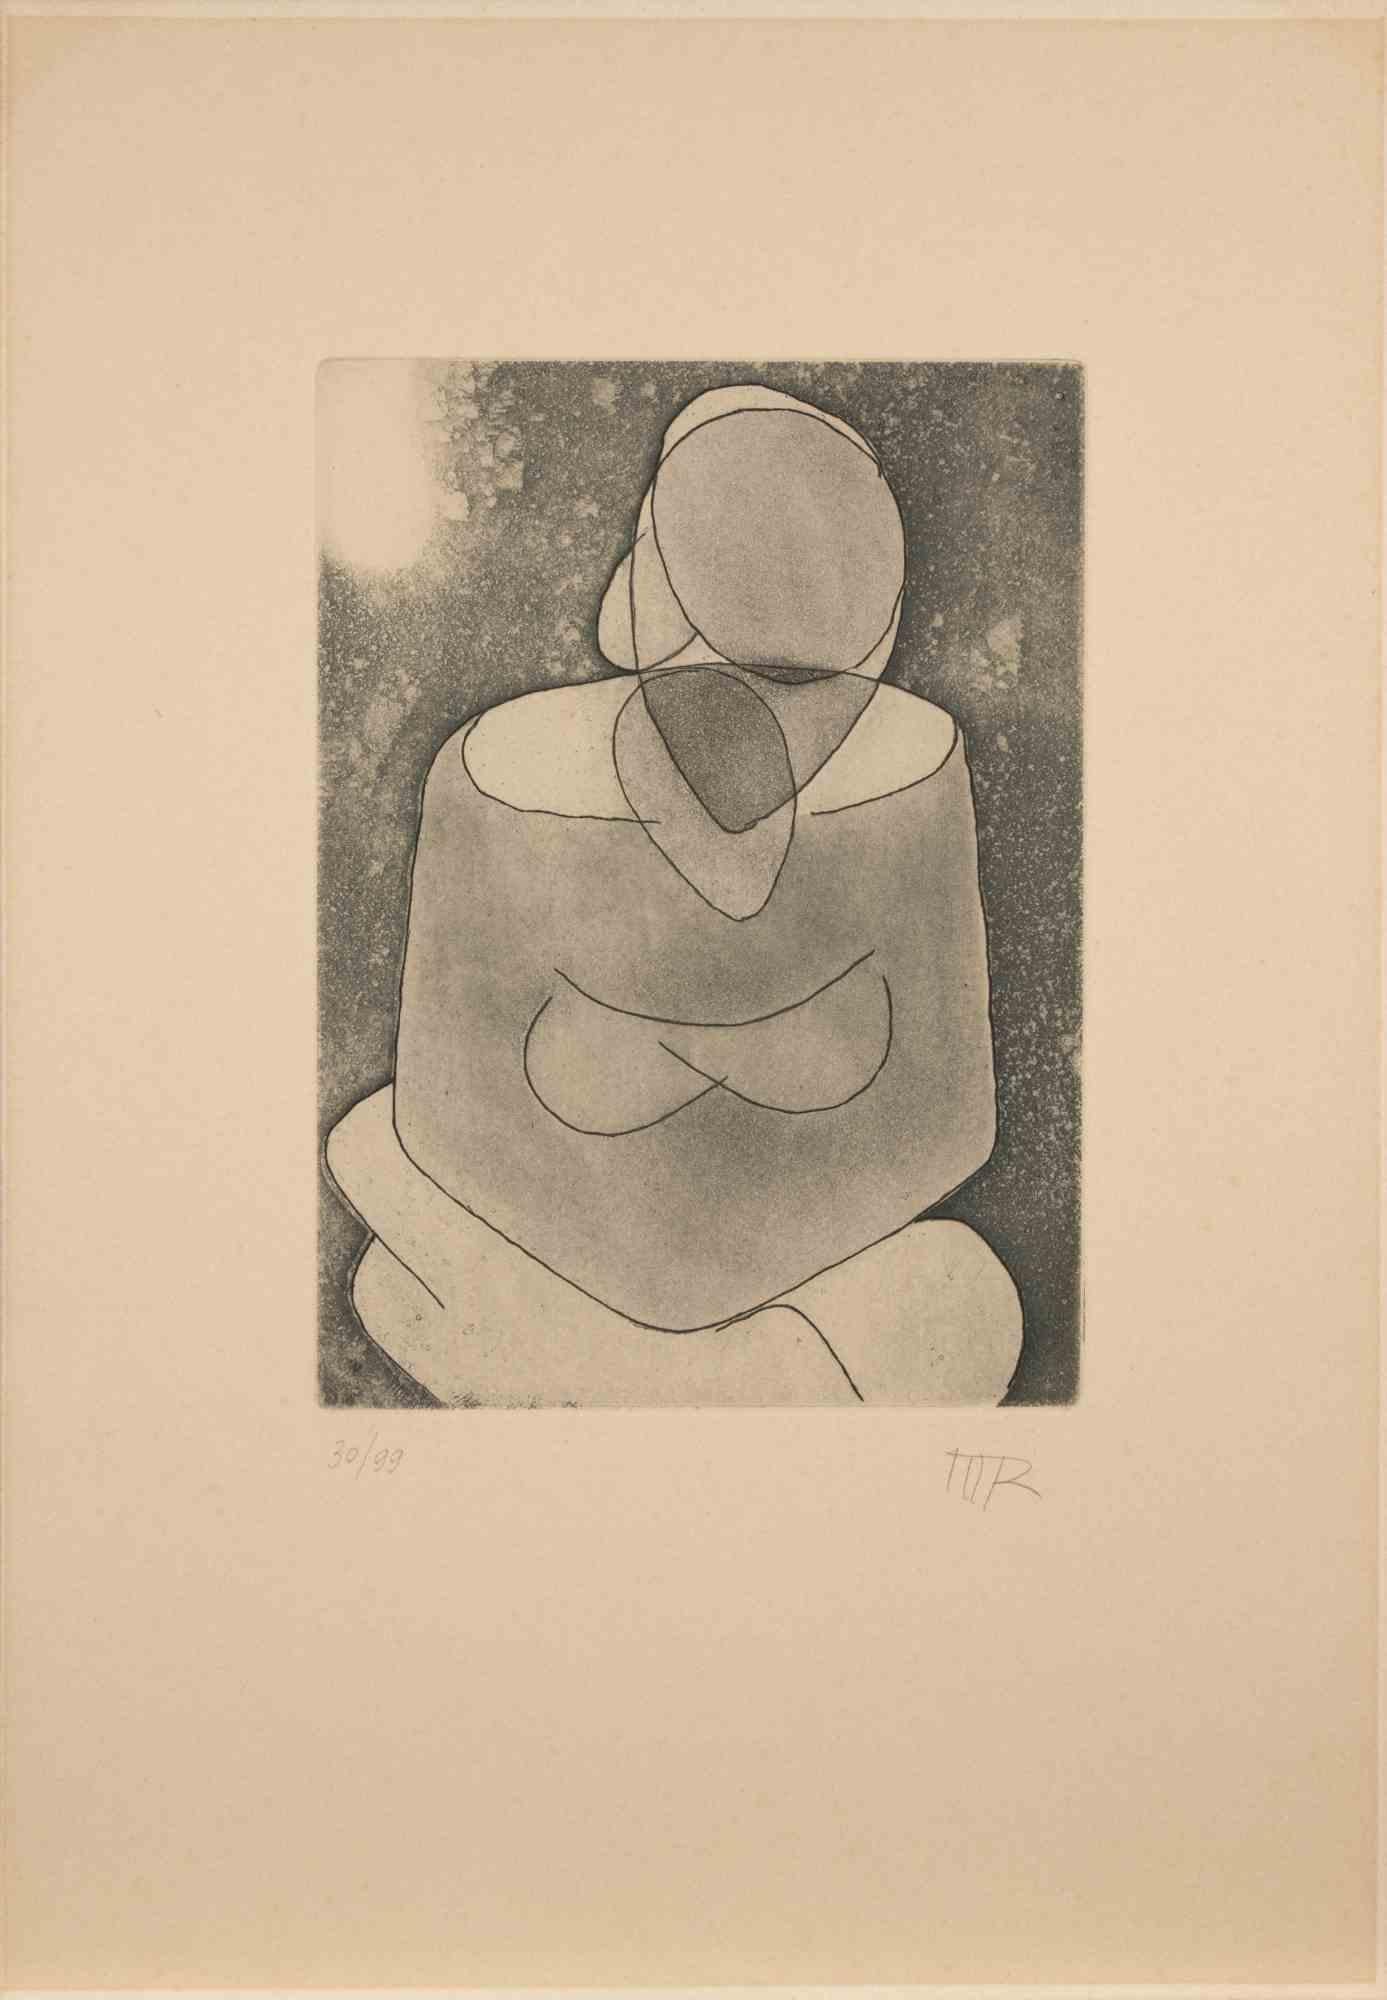 Woman ist ein zeitgenössisches Kunstwerk von Man Ray aus dem Jahr 1968.

Schwarz-weiß Aquatinta.

Initialen des Künstlers am unteren Rand.

Links unten nummeriert. Auflage von 30/99.

Referenz Marconi. Vol. I n. 49